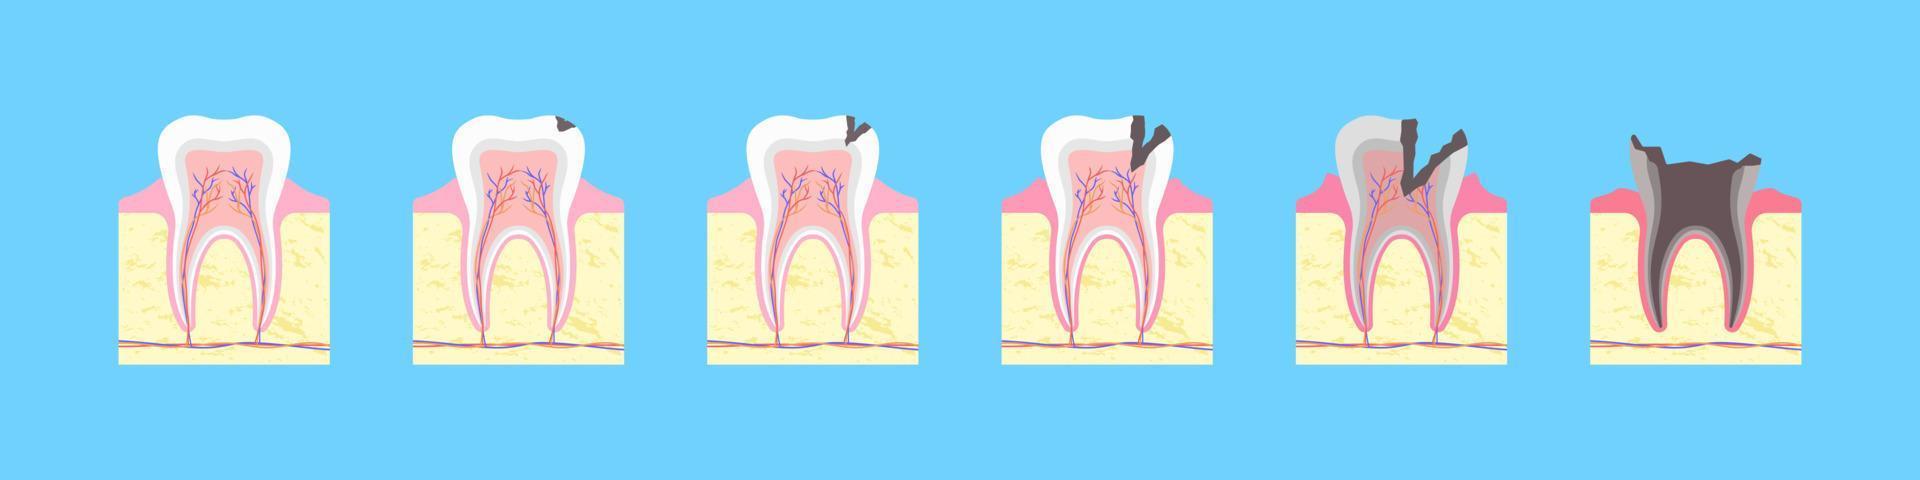 processo de destruição cariosa do dente. formação óssea saudável com fissura negra e inflamação gradual. cárie do esmalte com infecção dentária e perda completa do vetor